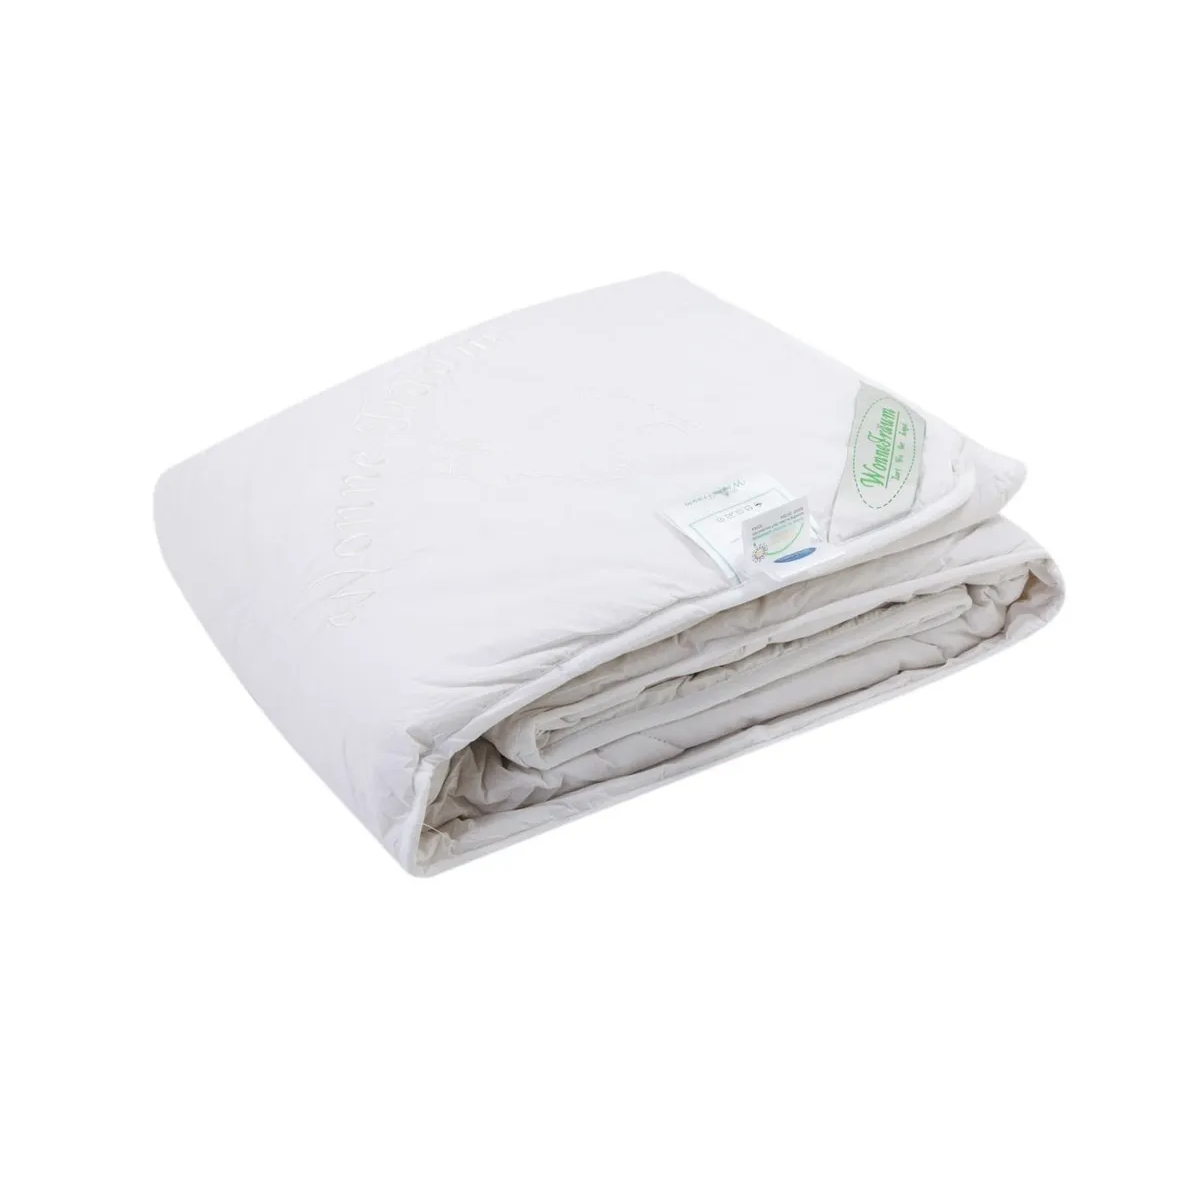 Одеяло шерстяное Wonne Traum белое 200х220 см (2709-26241) одеяло wonne traum down like 150х210 см